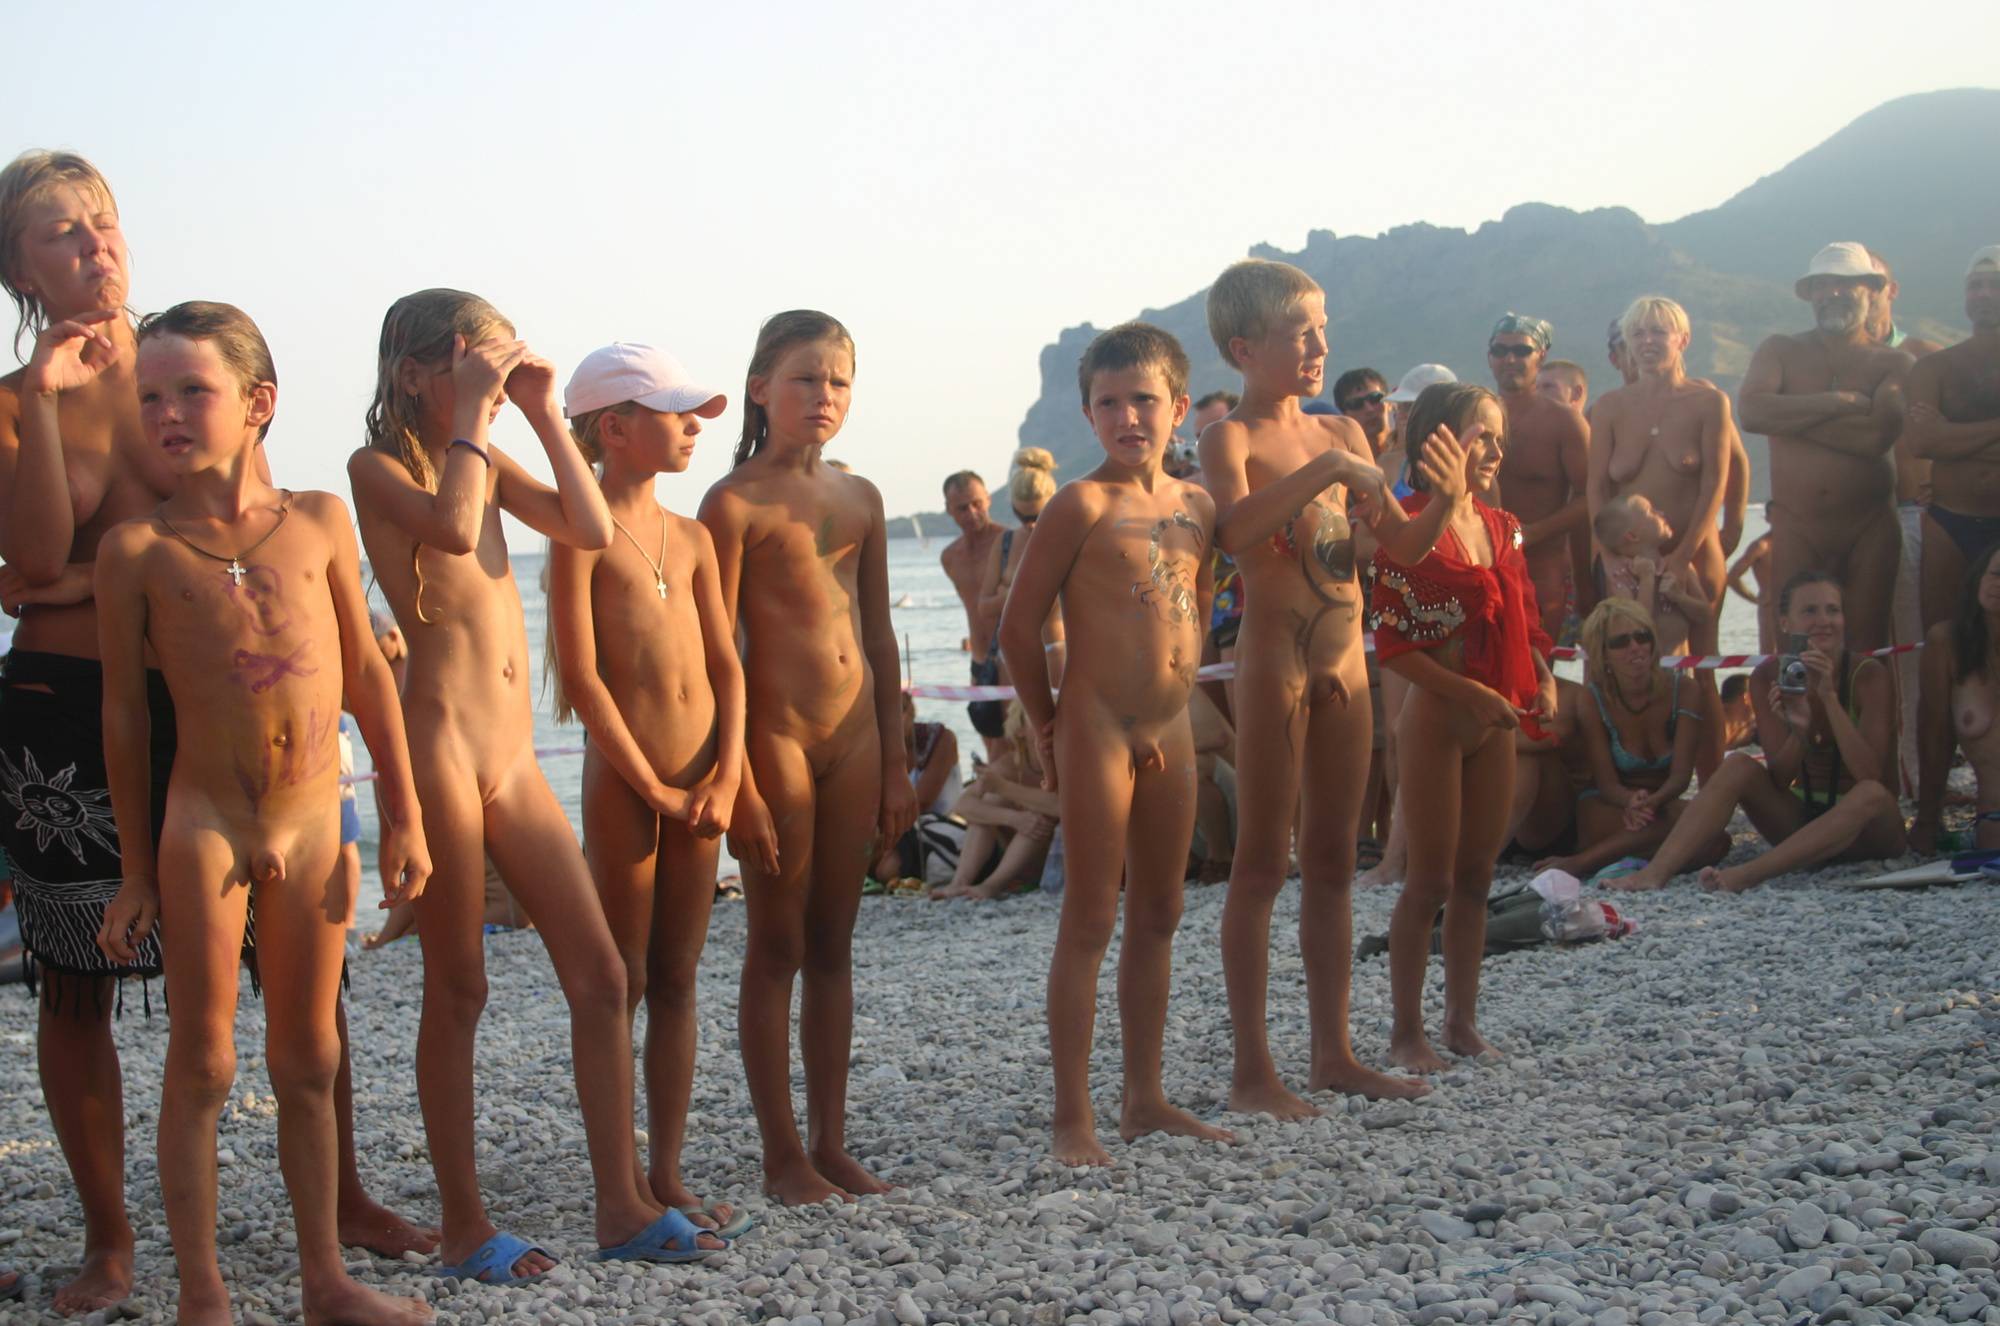 Nudist Photos Present and Award Profiles - 1